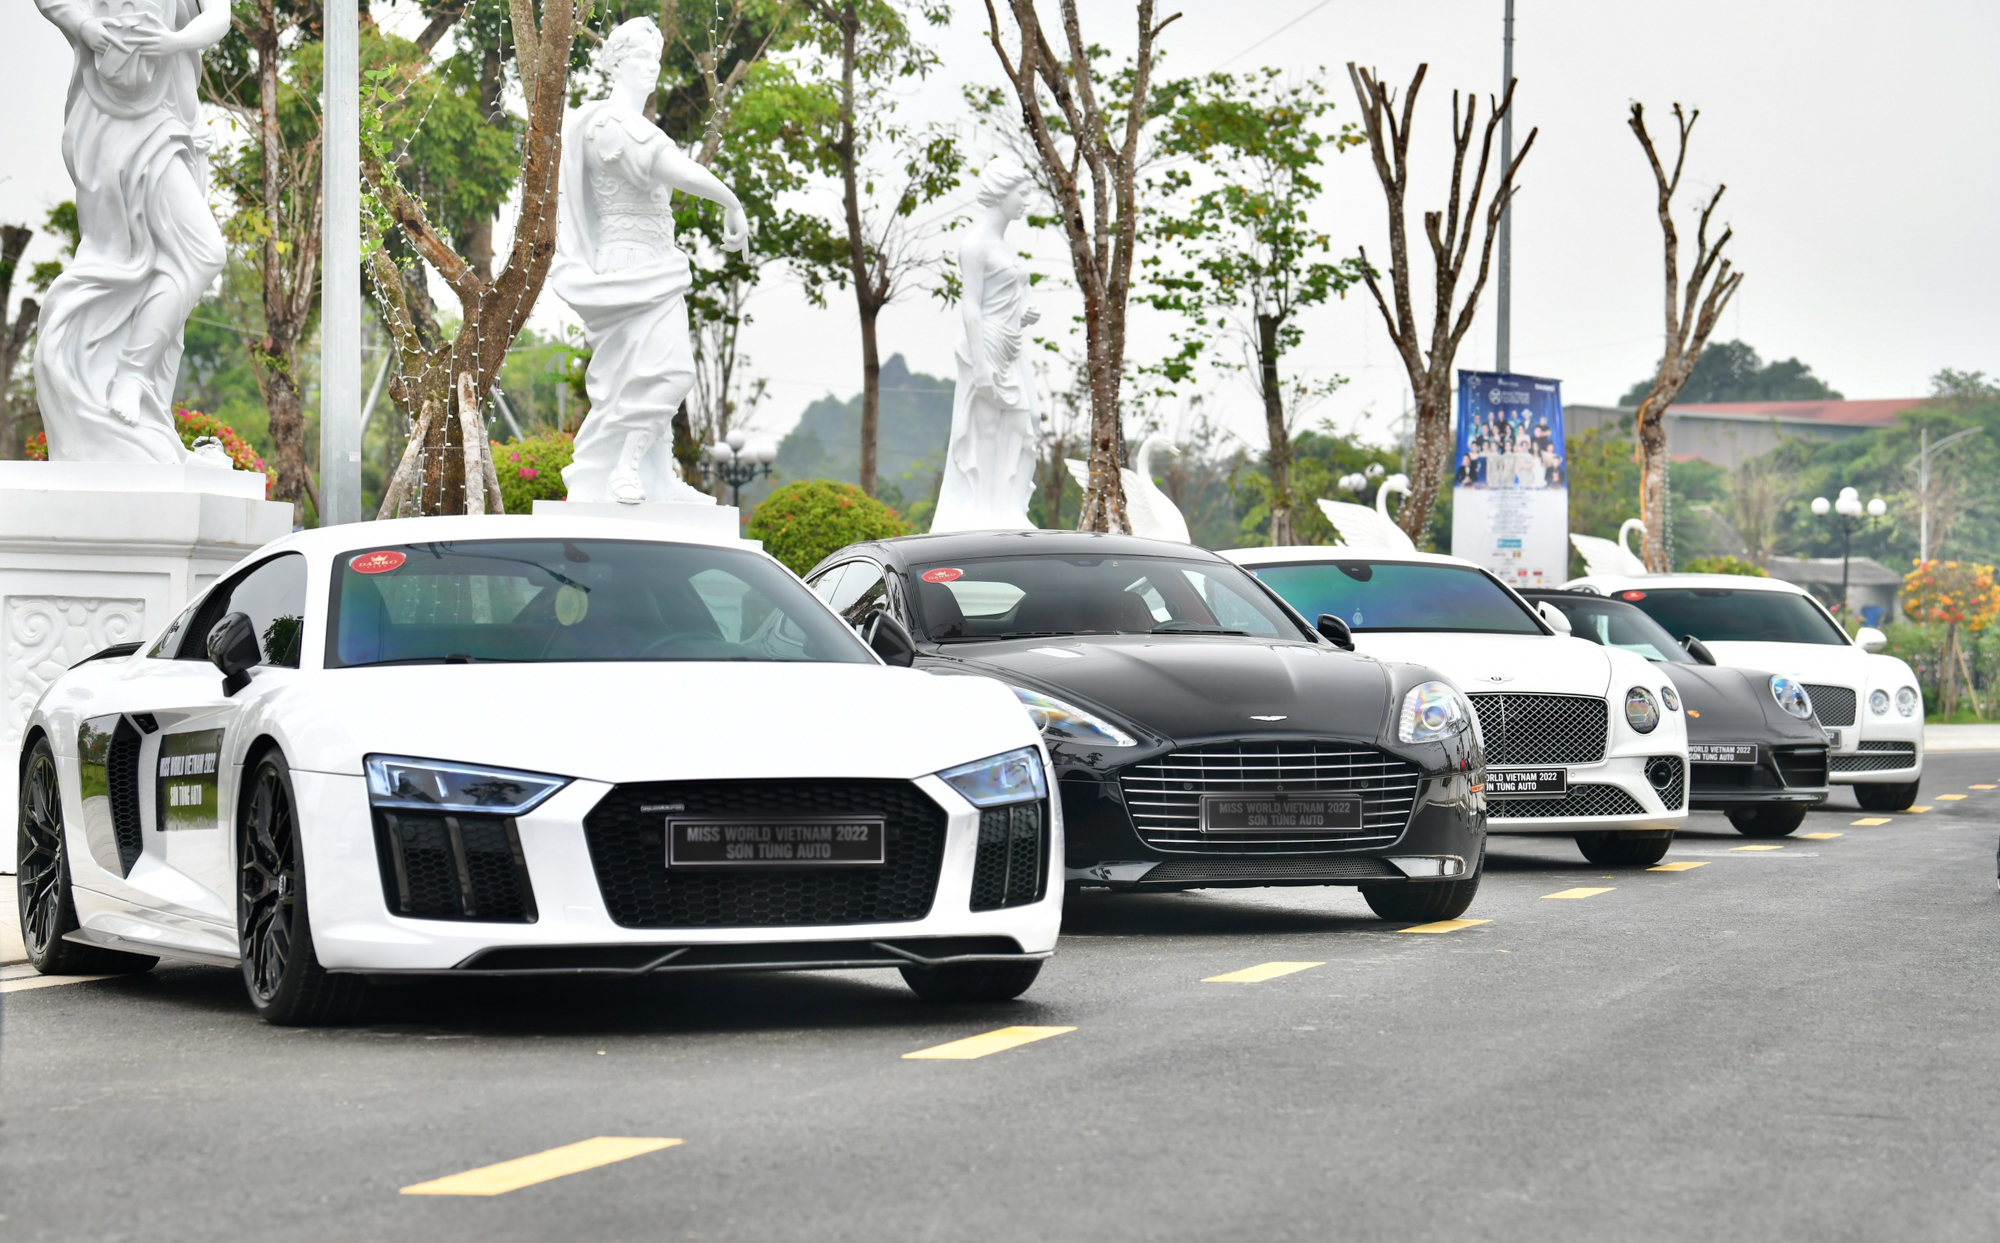 Xe chủ tịch giá 70 tỷ đọ dáng cùng dàn siêu xe tại Thái Nguyên - Ảnh 1.